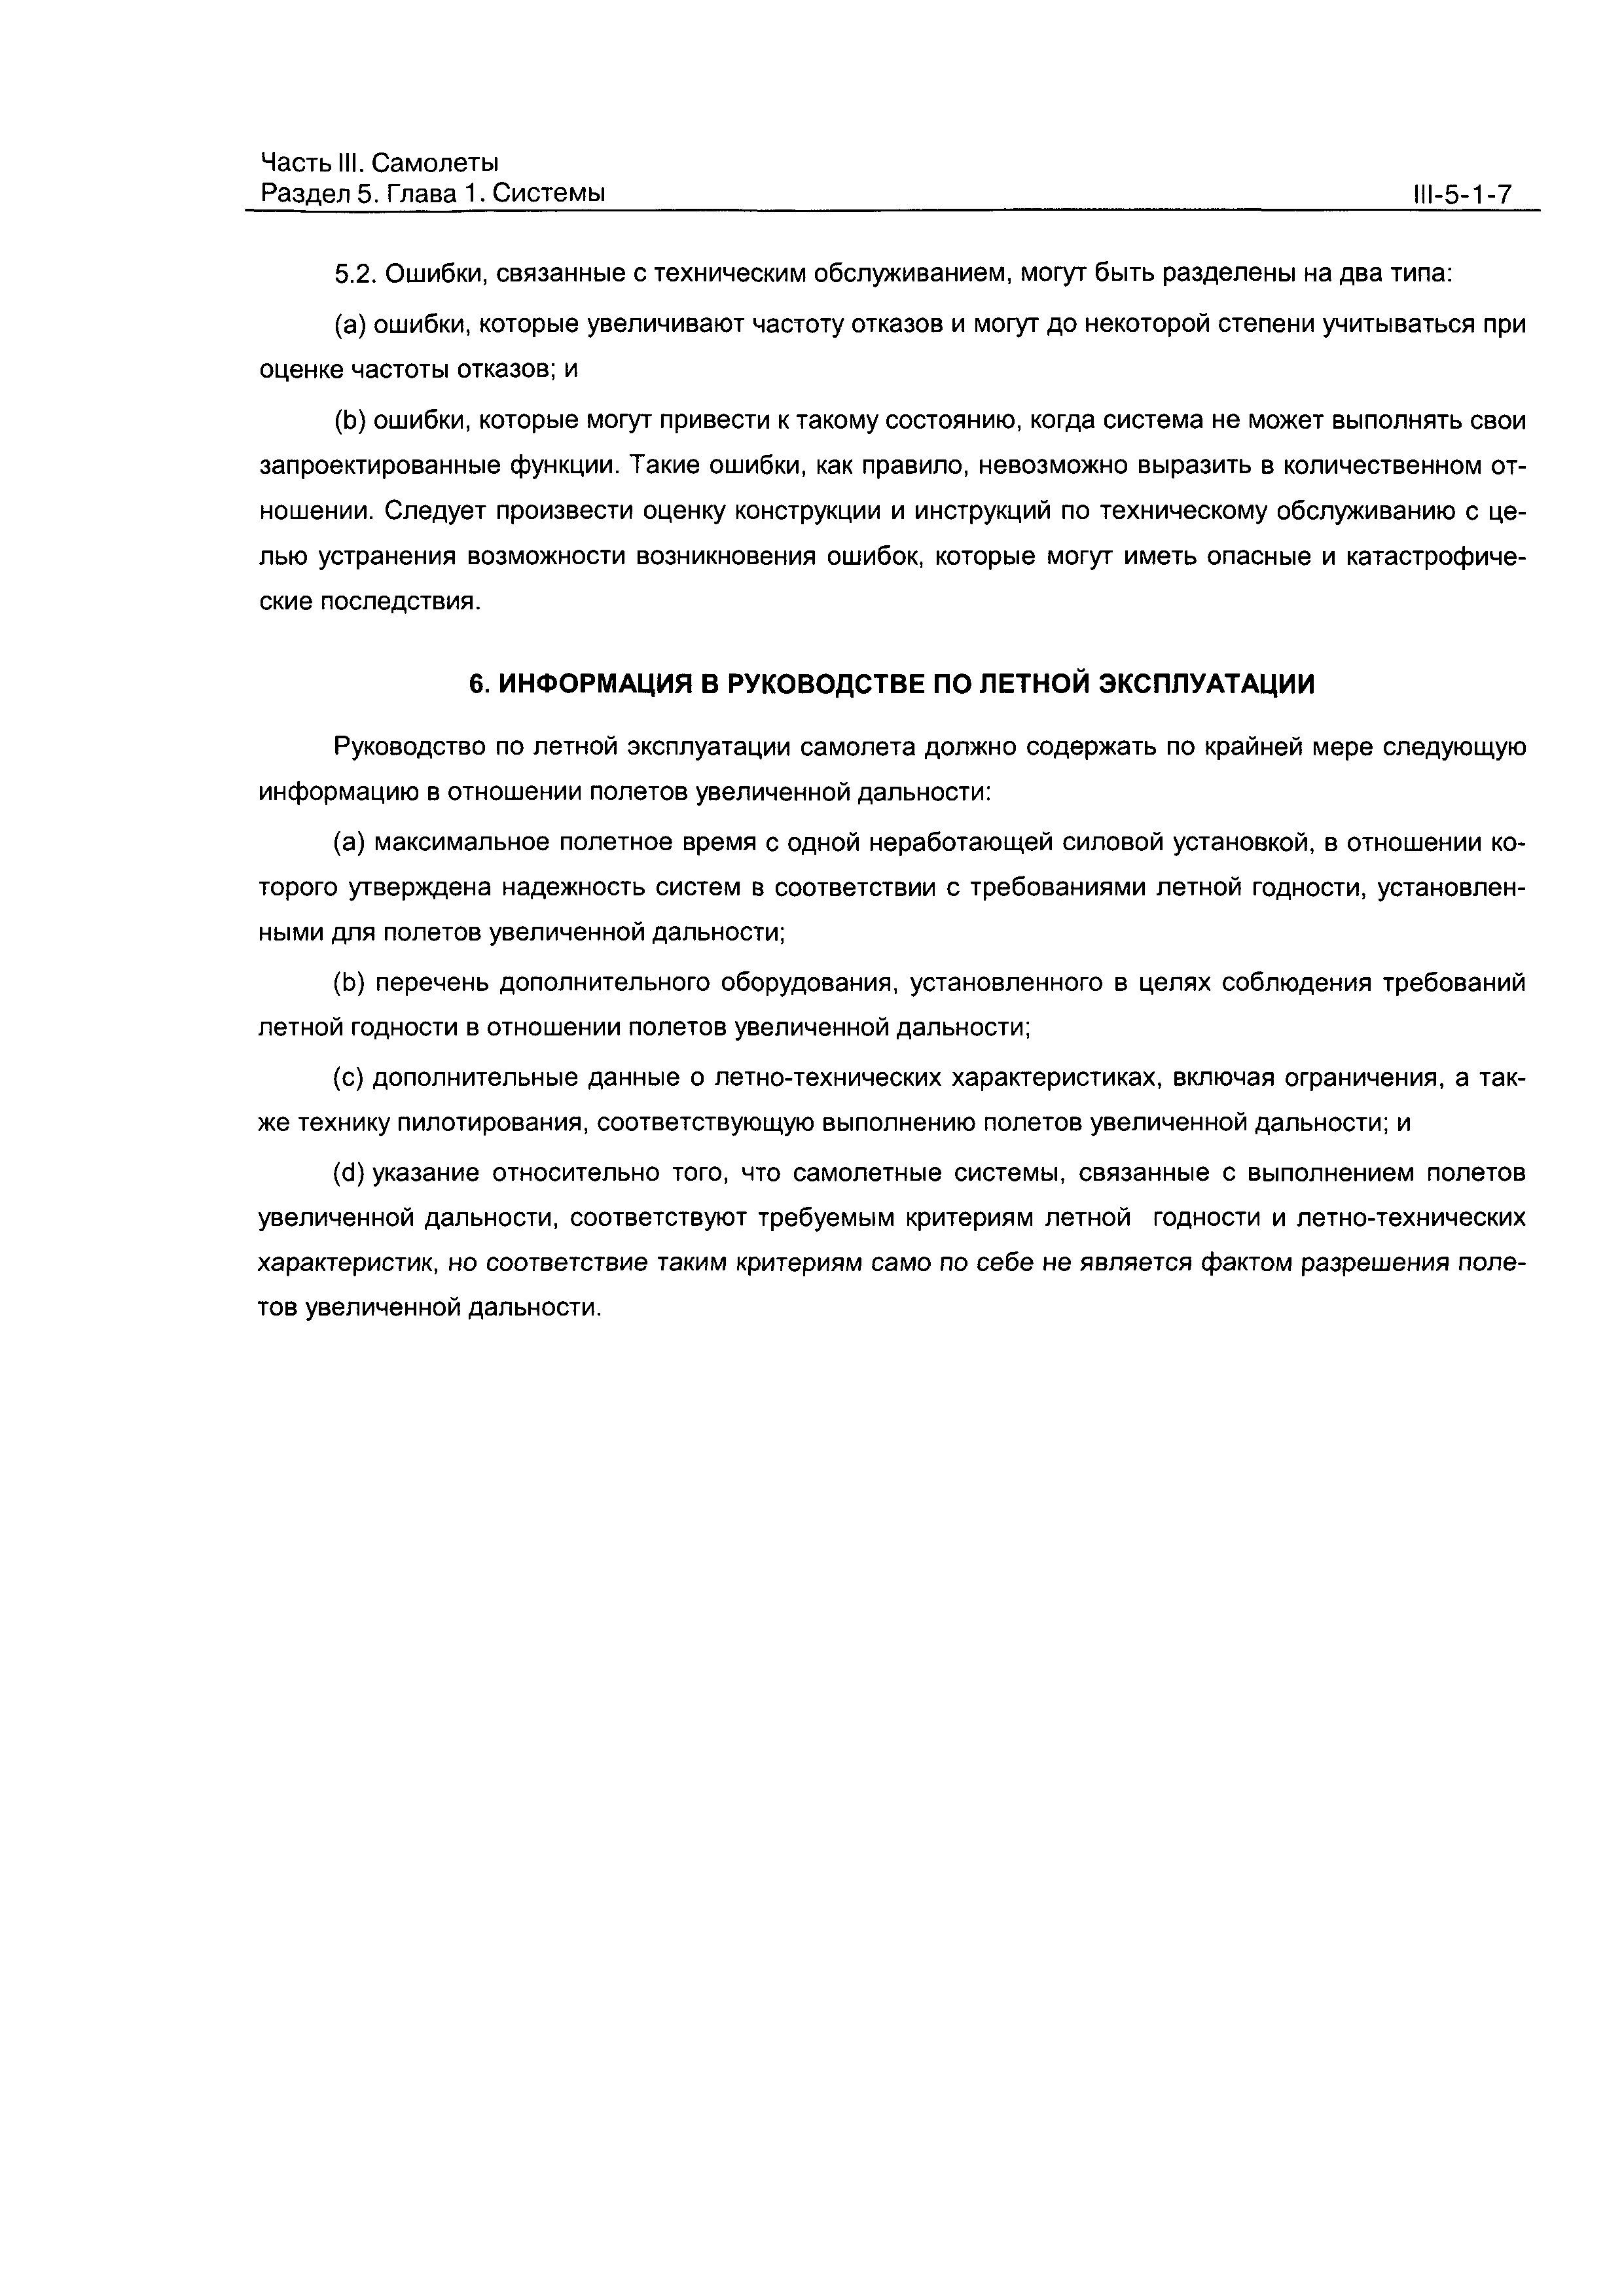 Директивное письмо 2-2000